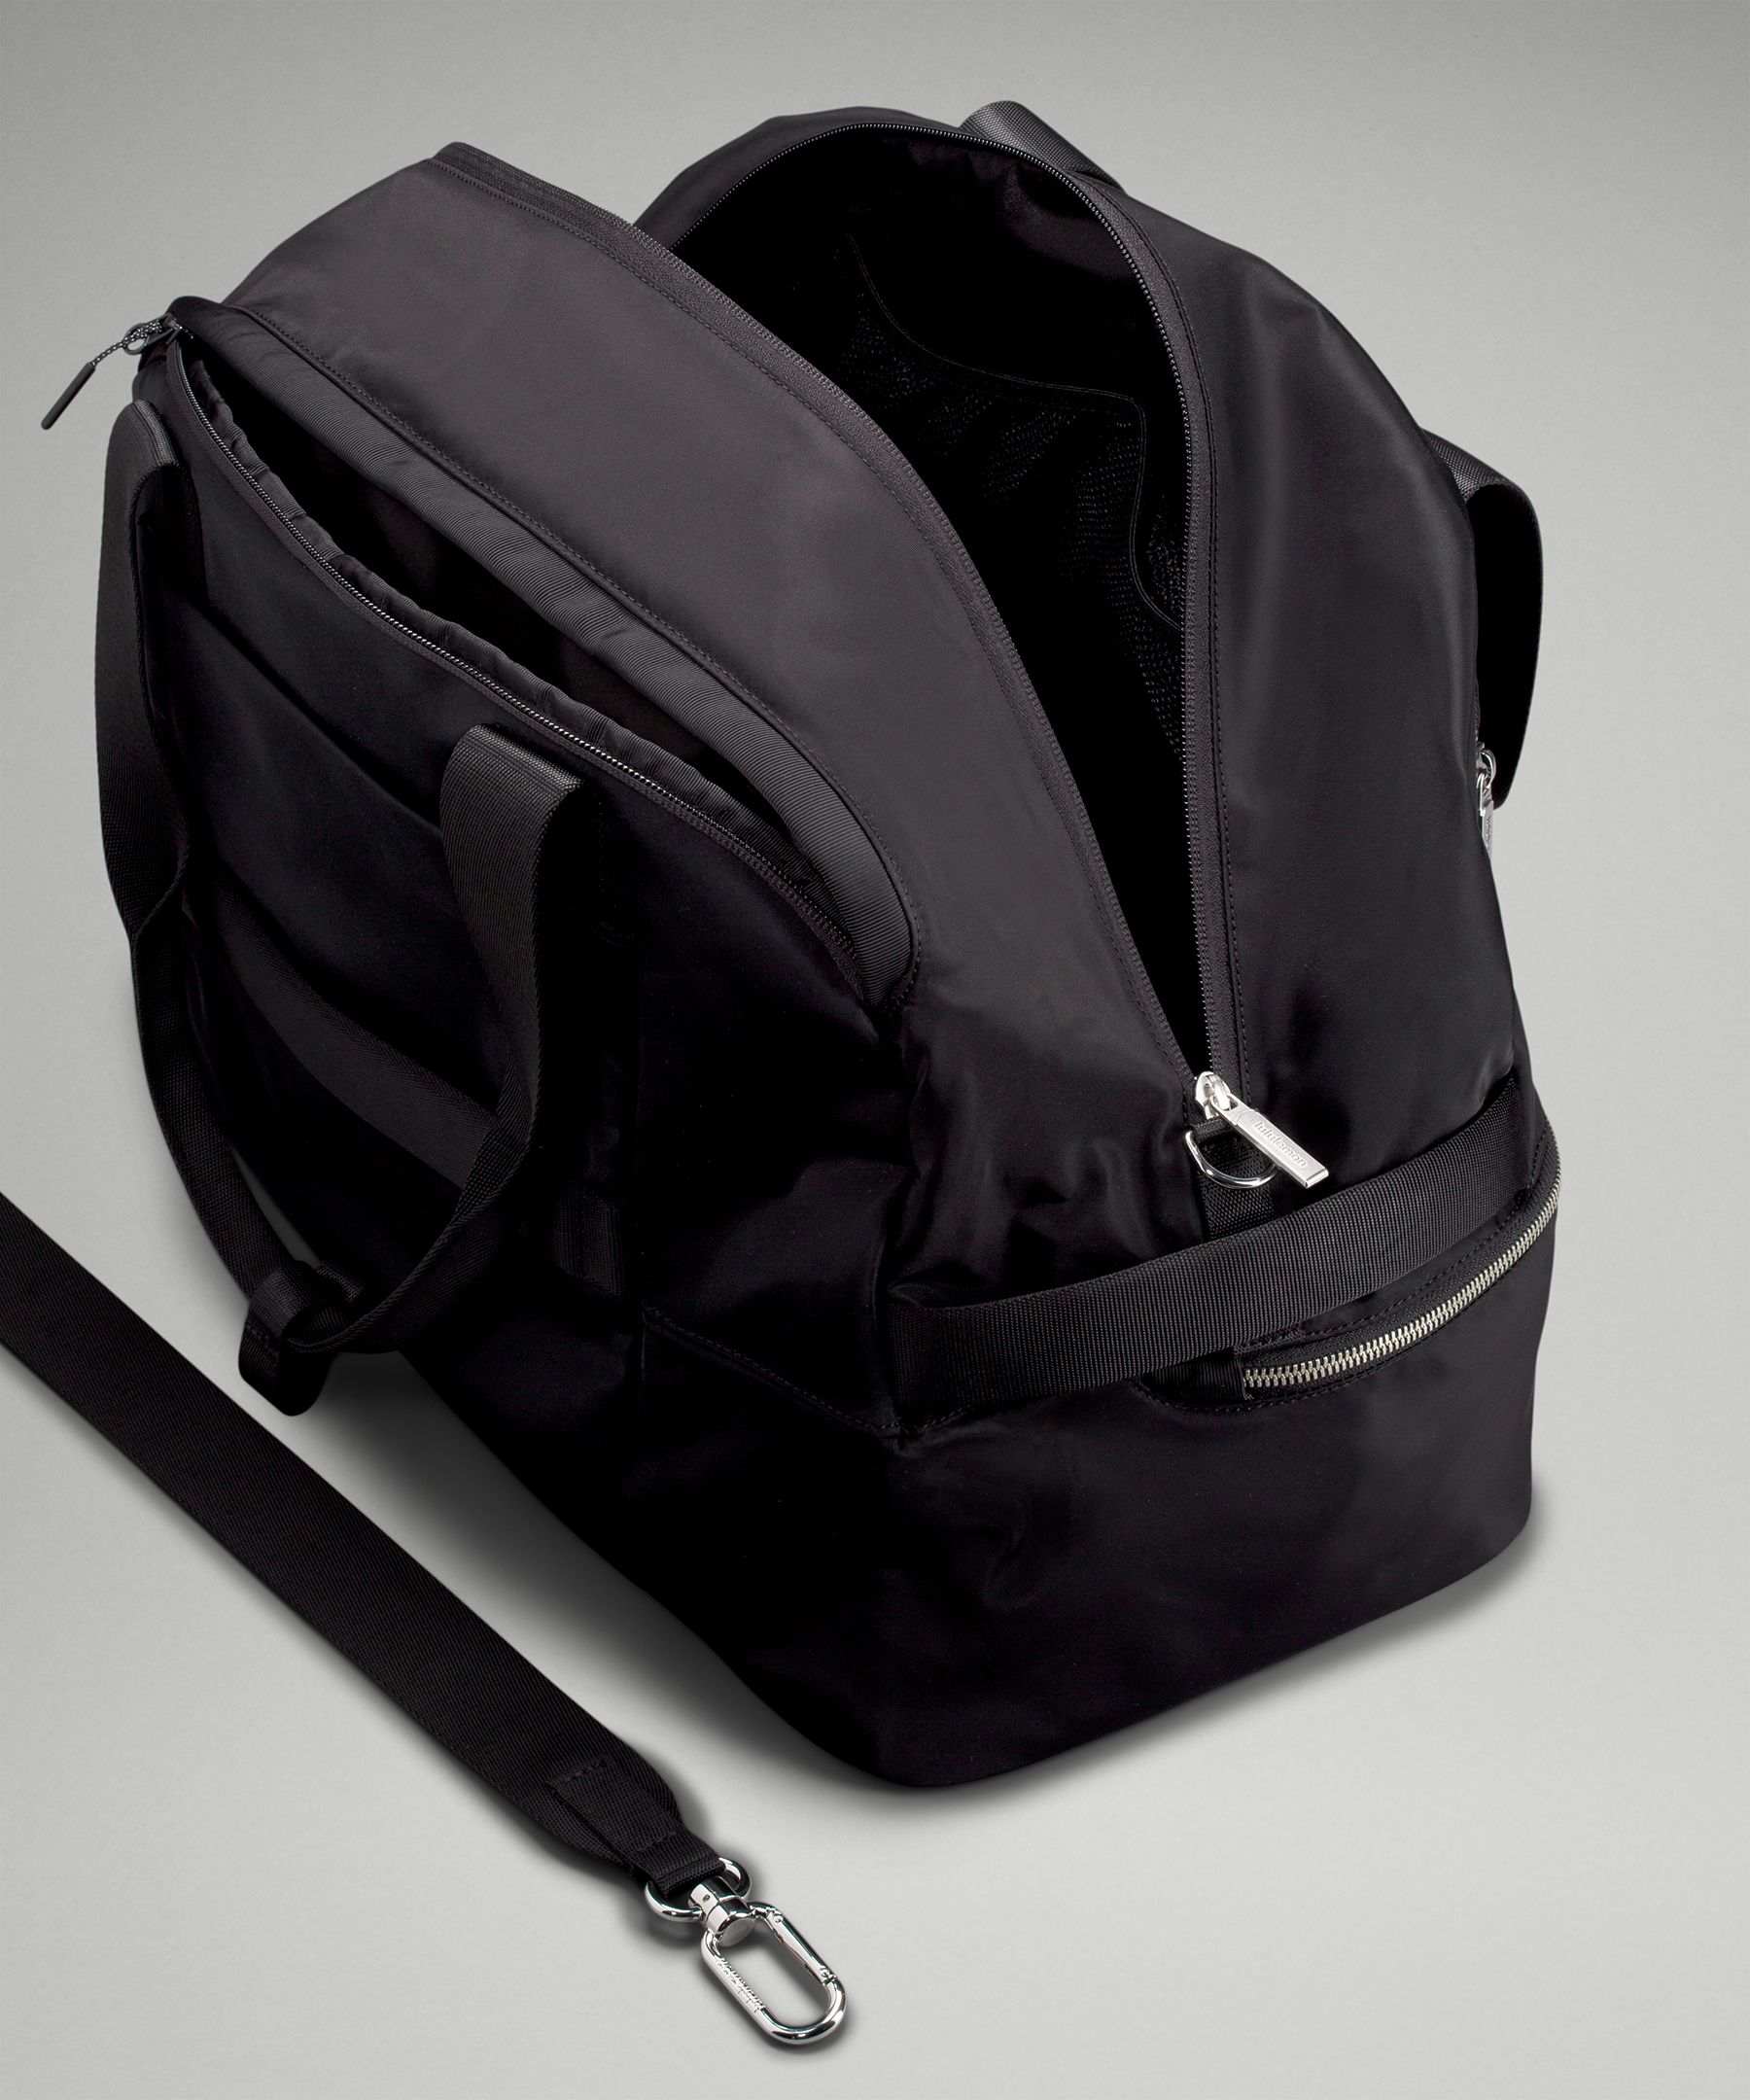 Lululemon City Adventurer Backpack 21l - Black